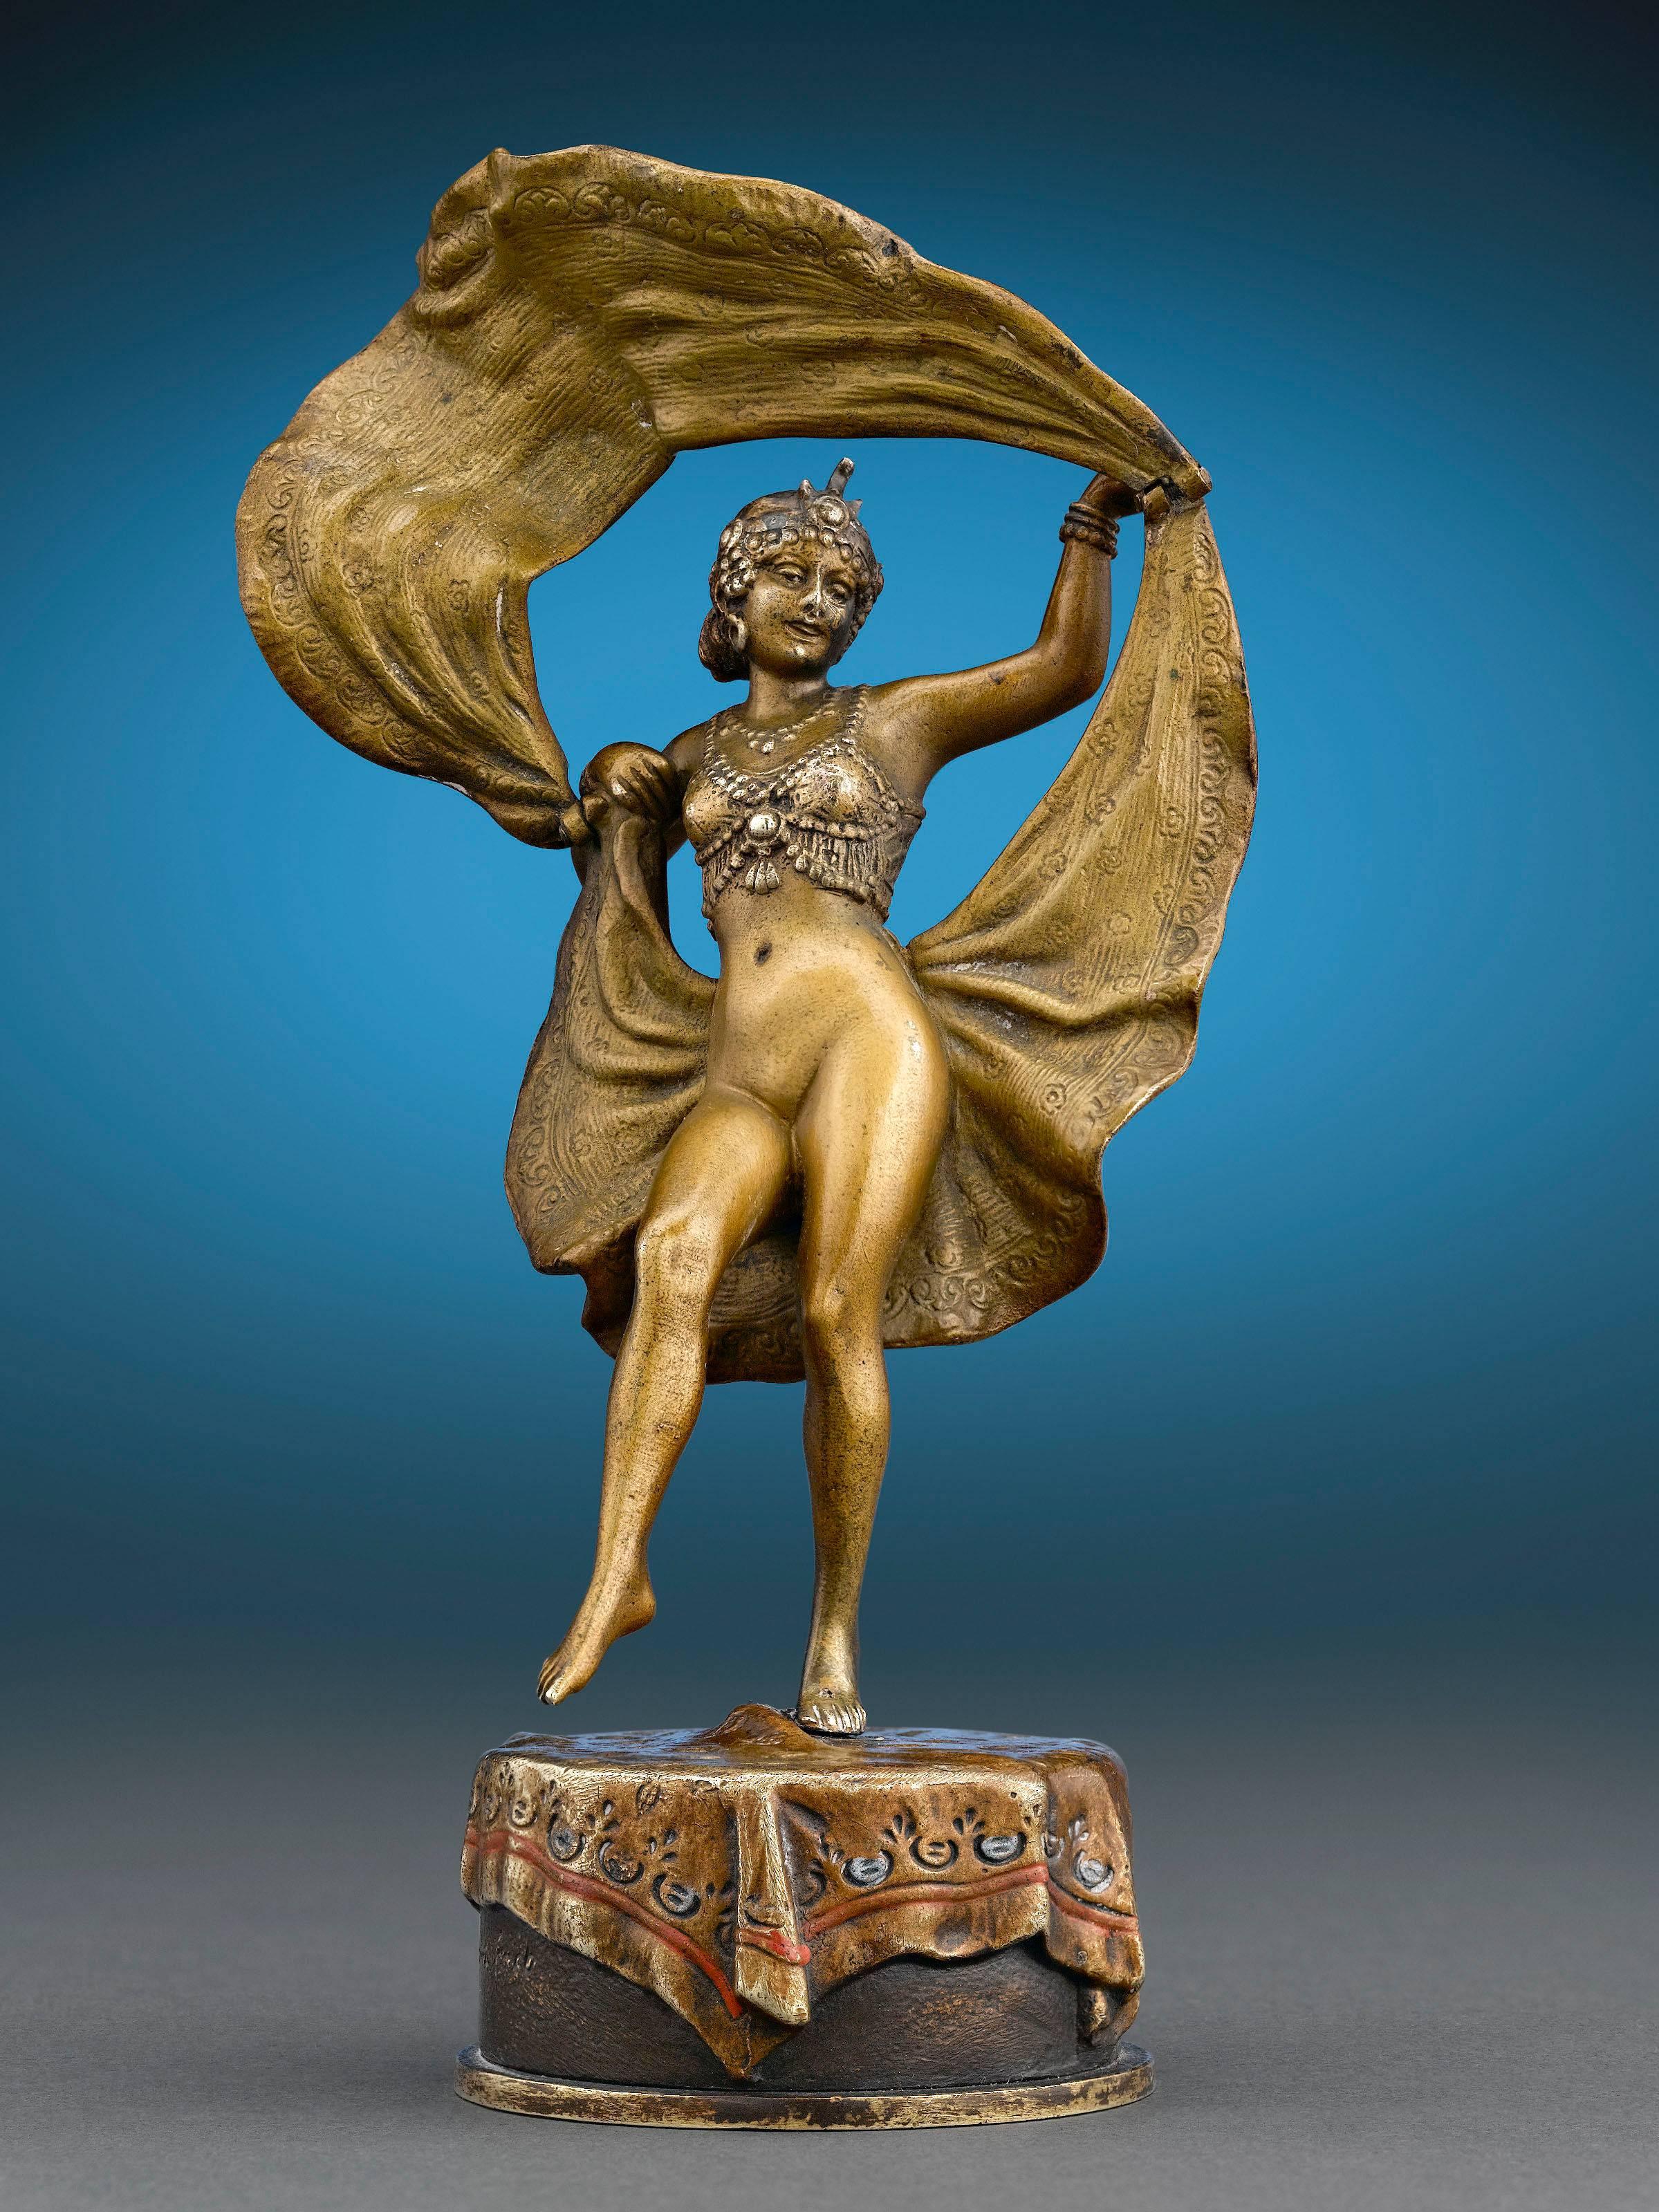 Erotic Dancer by Bergmann - Sculpture by Franz Bergmann